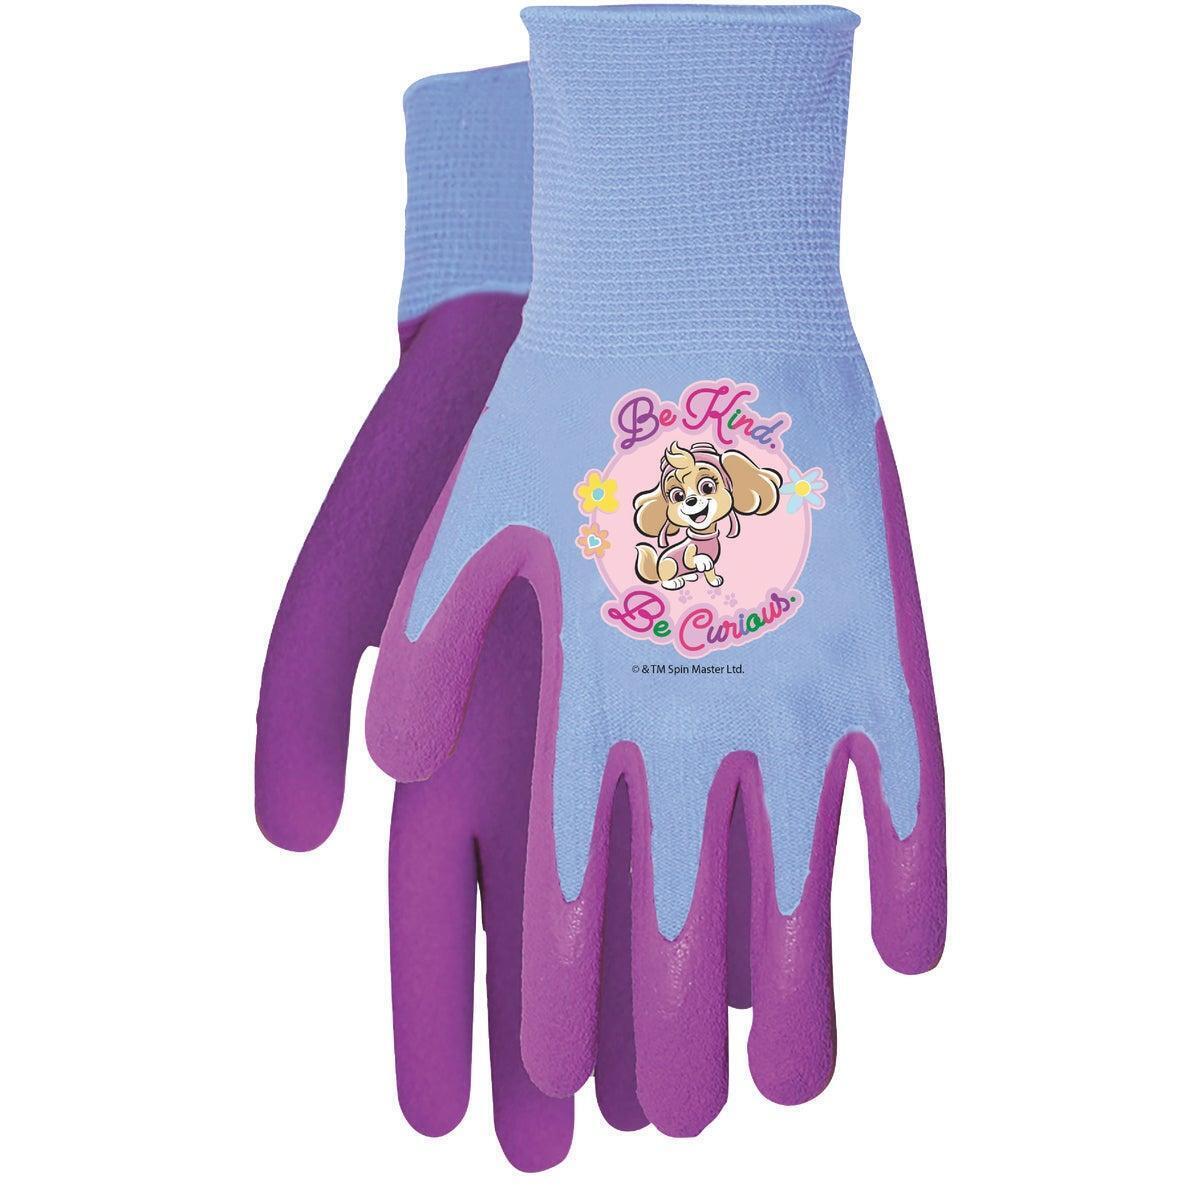 Nickelodeon Paw Patrol Toddler Gripper Glove, Violet PWG100TM2 Pack of 12